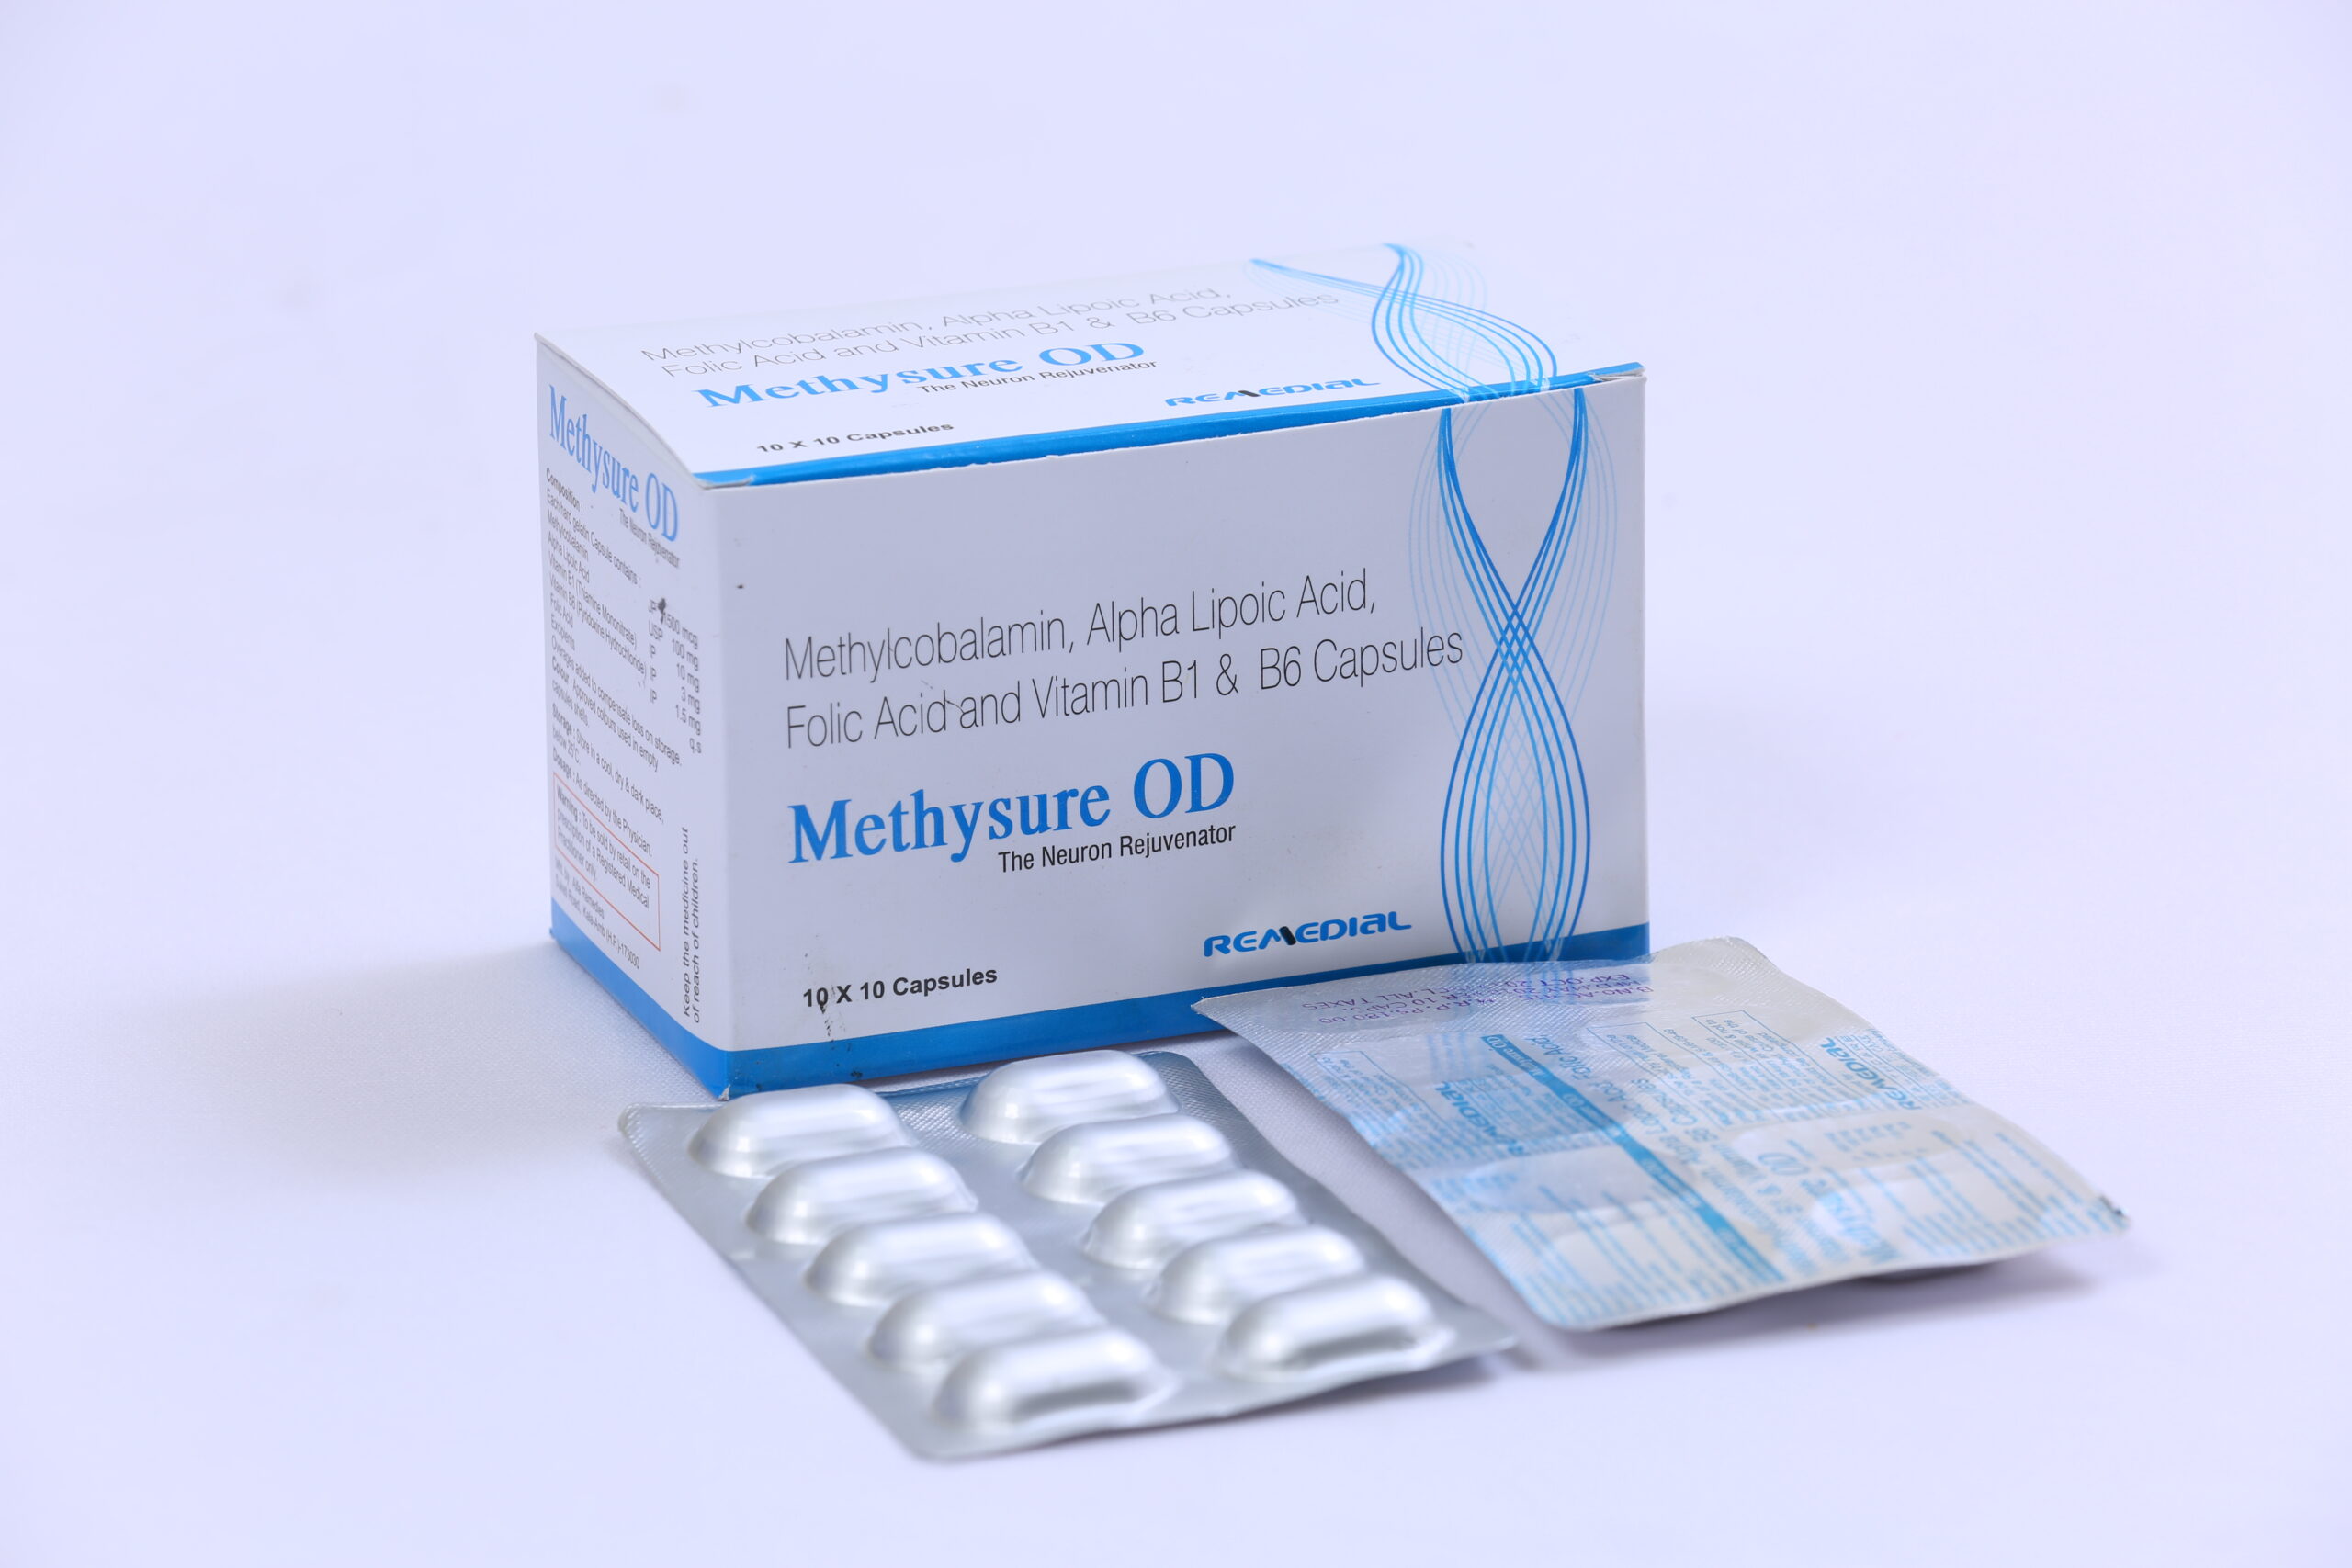 METHYSURE-OD (Methylcobalamin 1500mcg + Alpha Lipoic Acid 100mg)